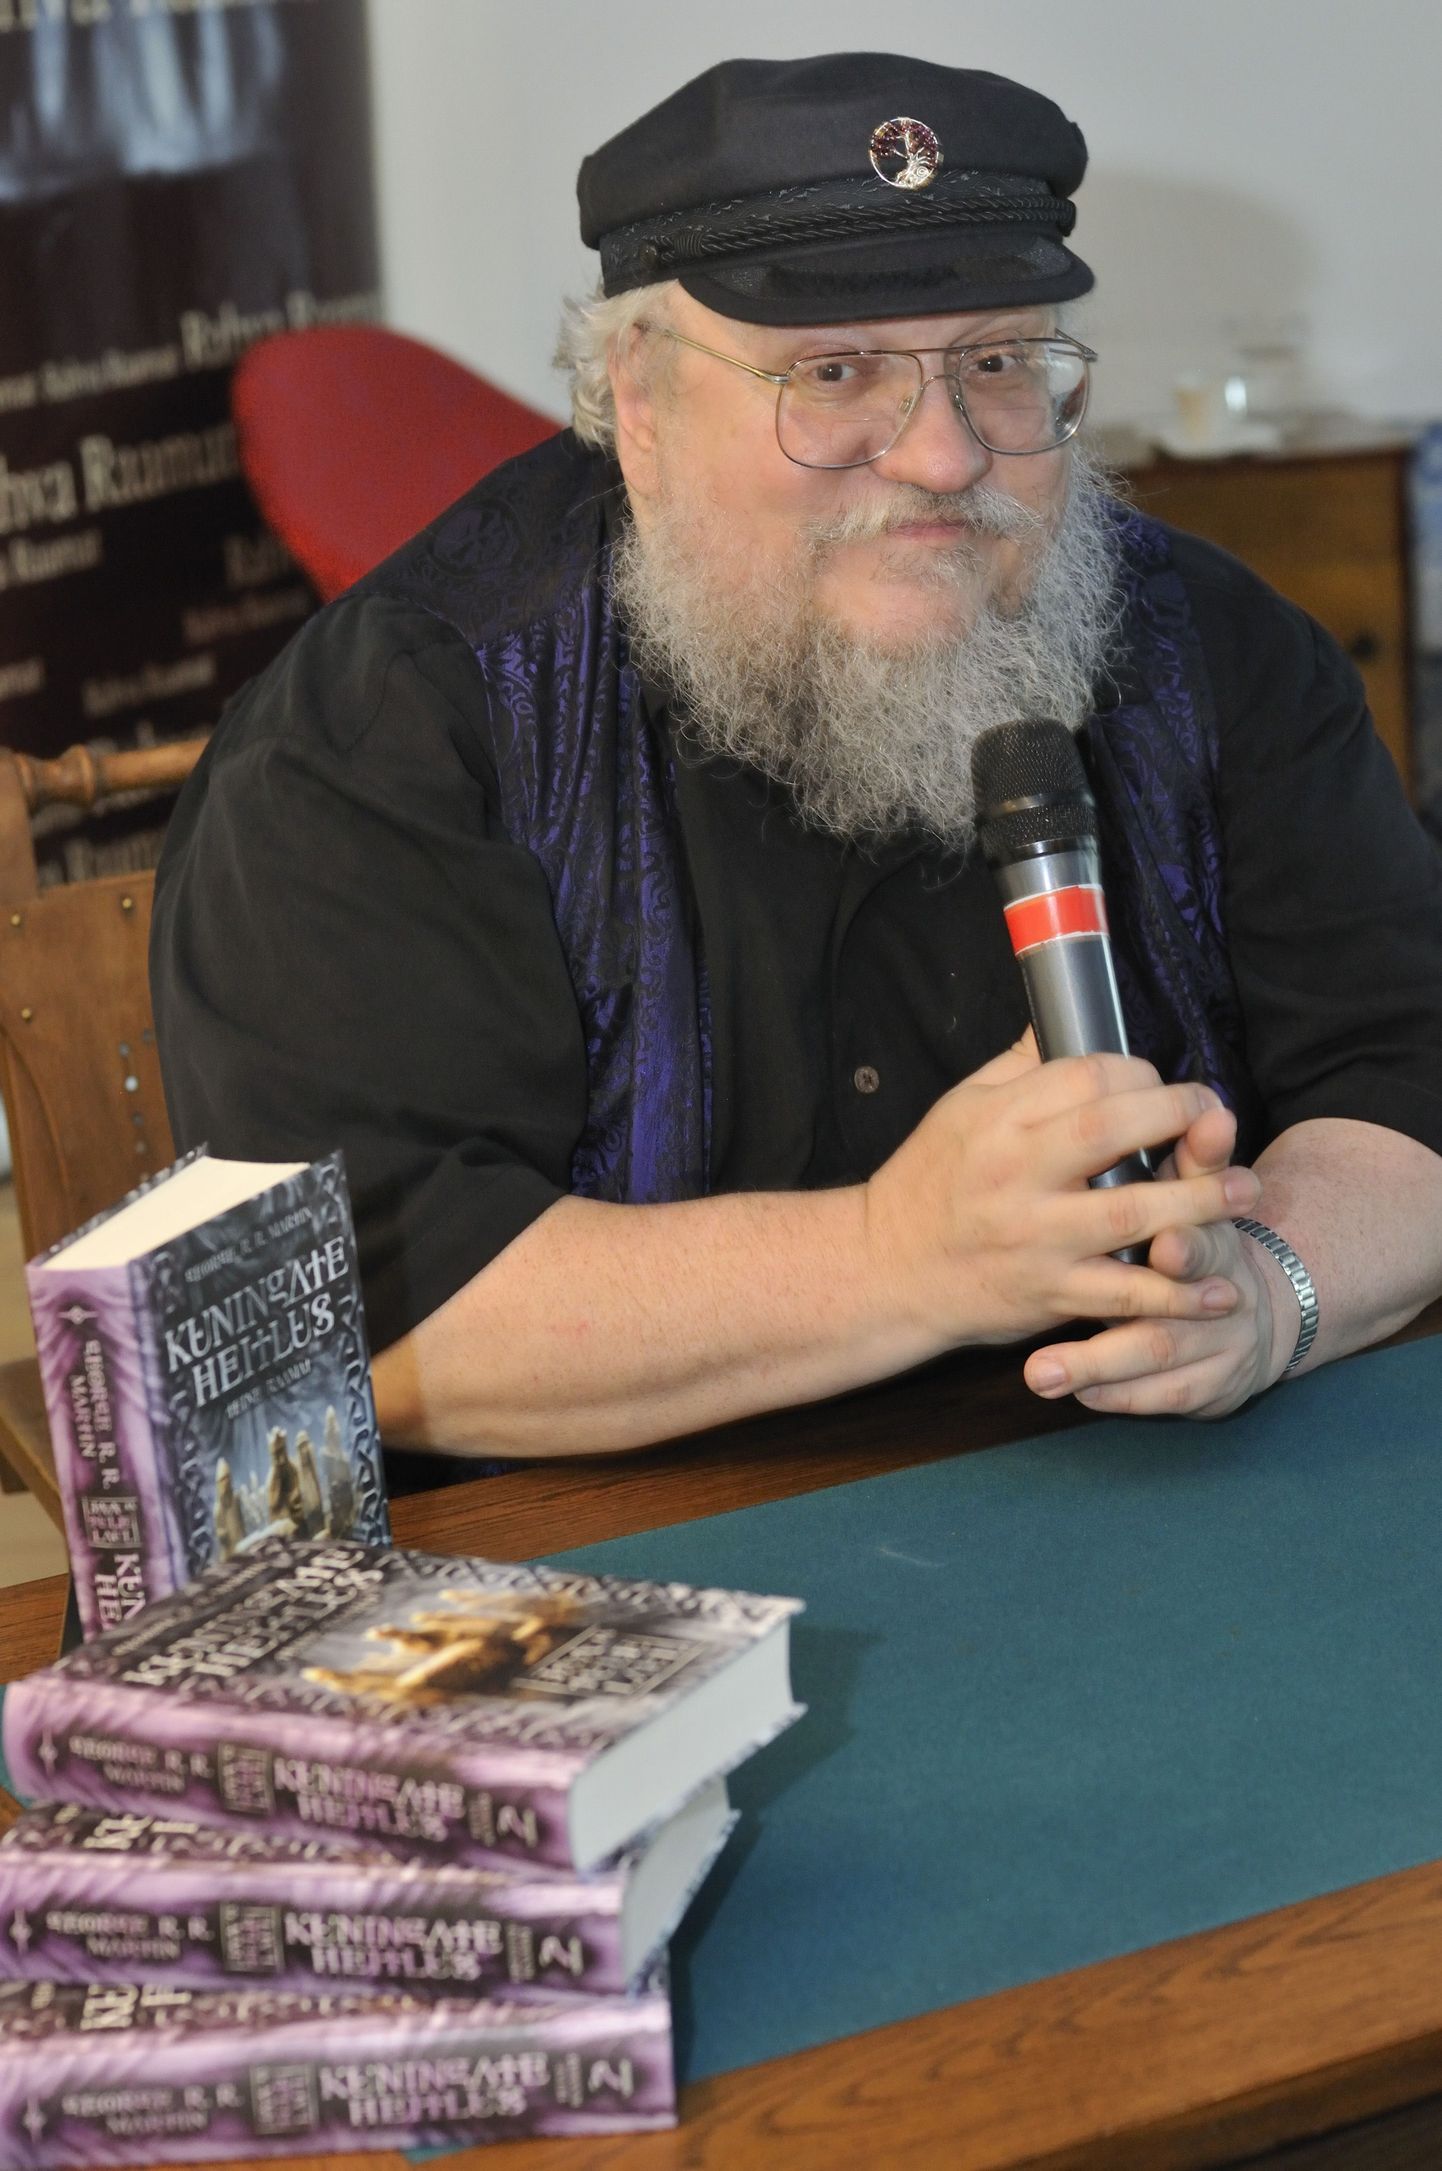 Ameerika fantastiline kirjanik George R.R. Martin, Tallinn, Rahva Raamat kauplus 2009. aastal.